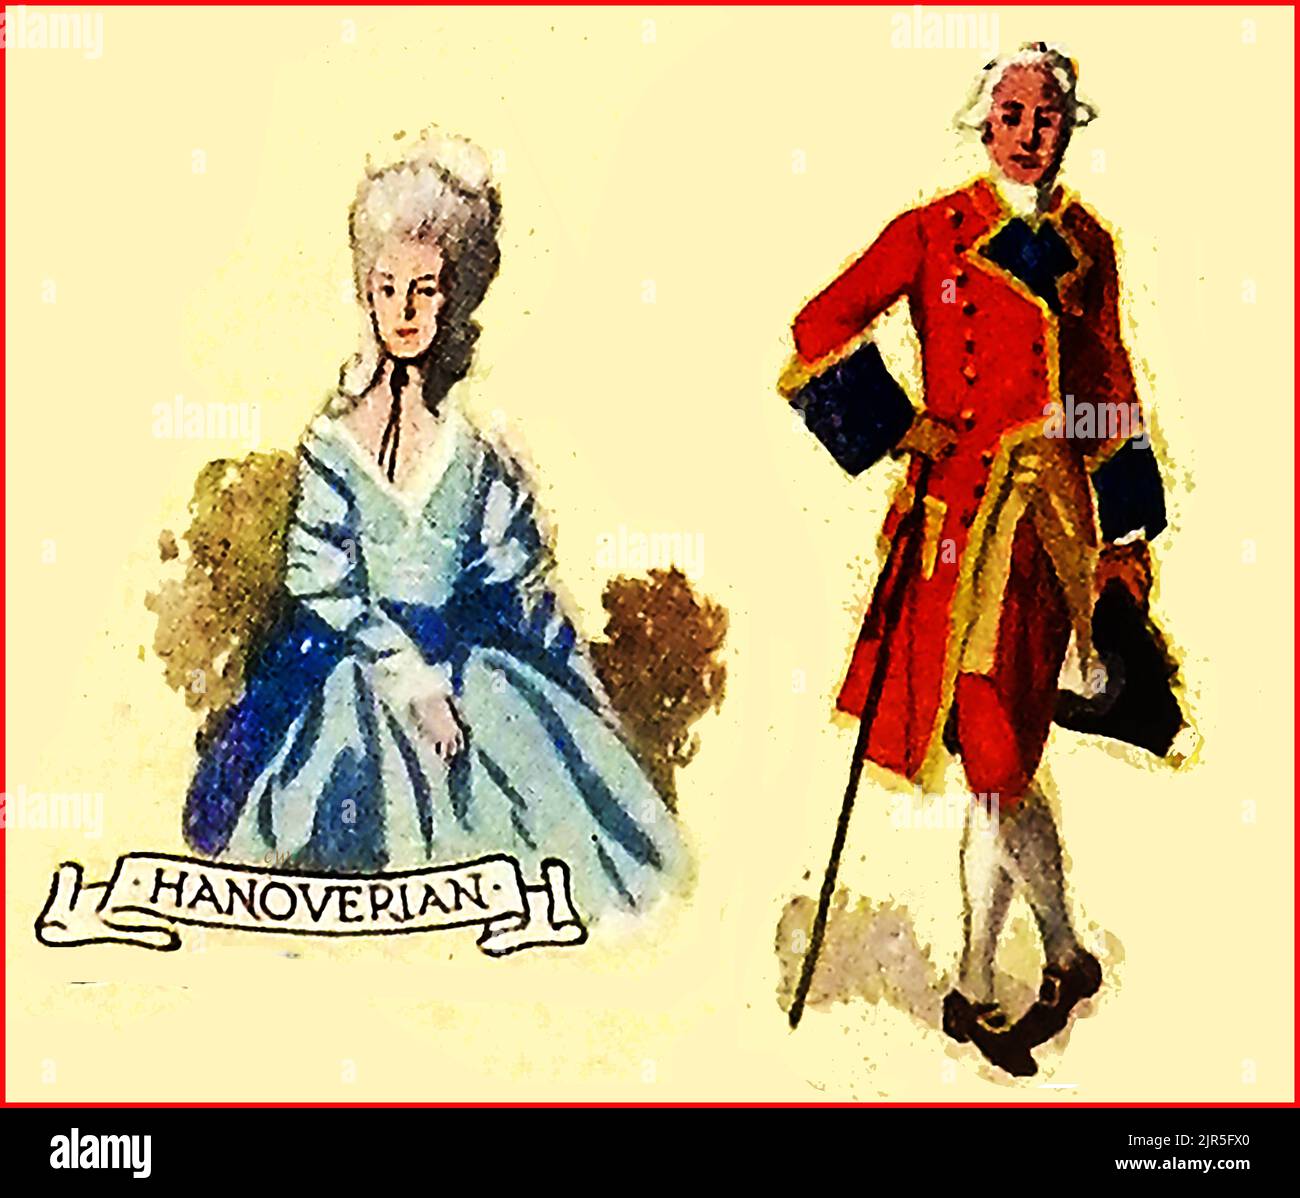 MODA IN GRAN BRETAGNA - una vecchia immagine colorata che mostra abiti tipici in tempi Hanoverian. Foto Stock